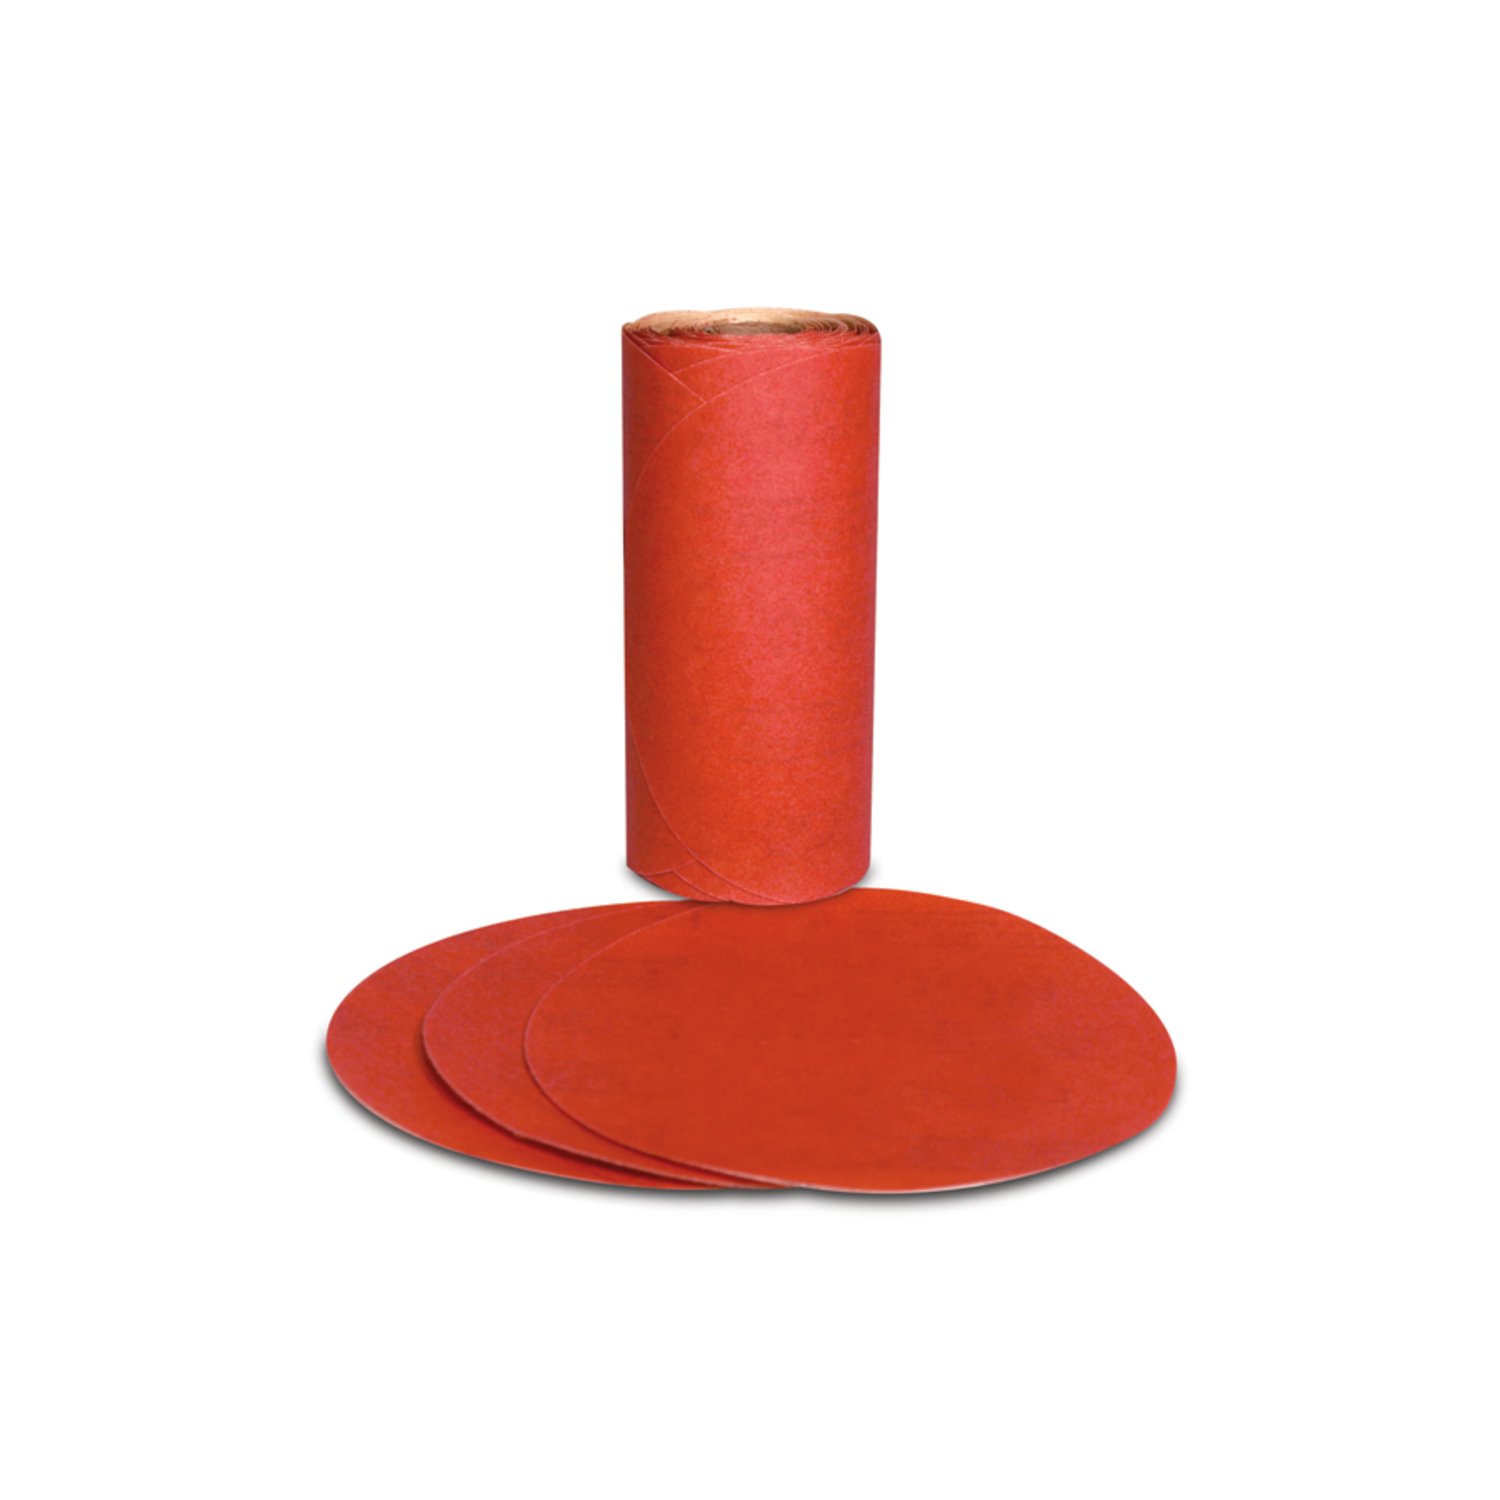 7000119914 - 3M Red Abrasive PSA Disc, 01606, 5 in, P180, 100 discs per roll, 6
rolls per case